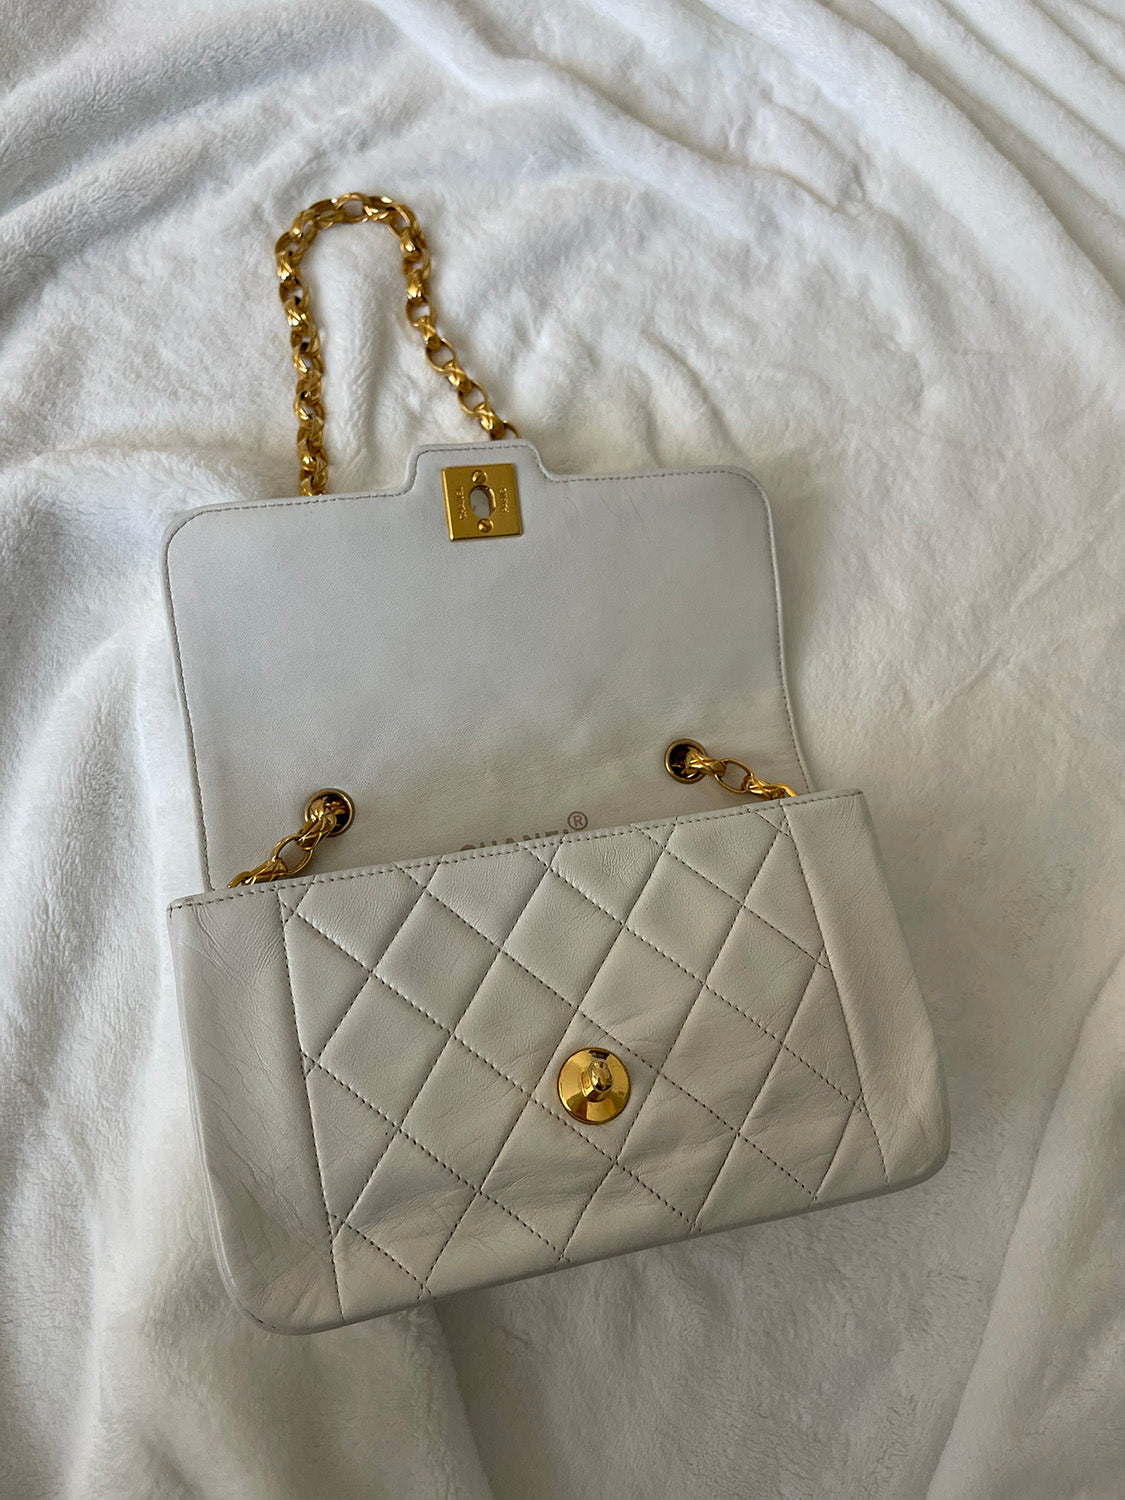 Chanel Vintage CC Flap Bag